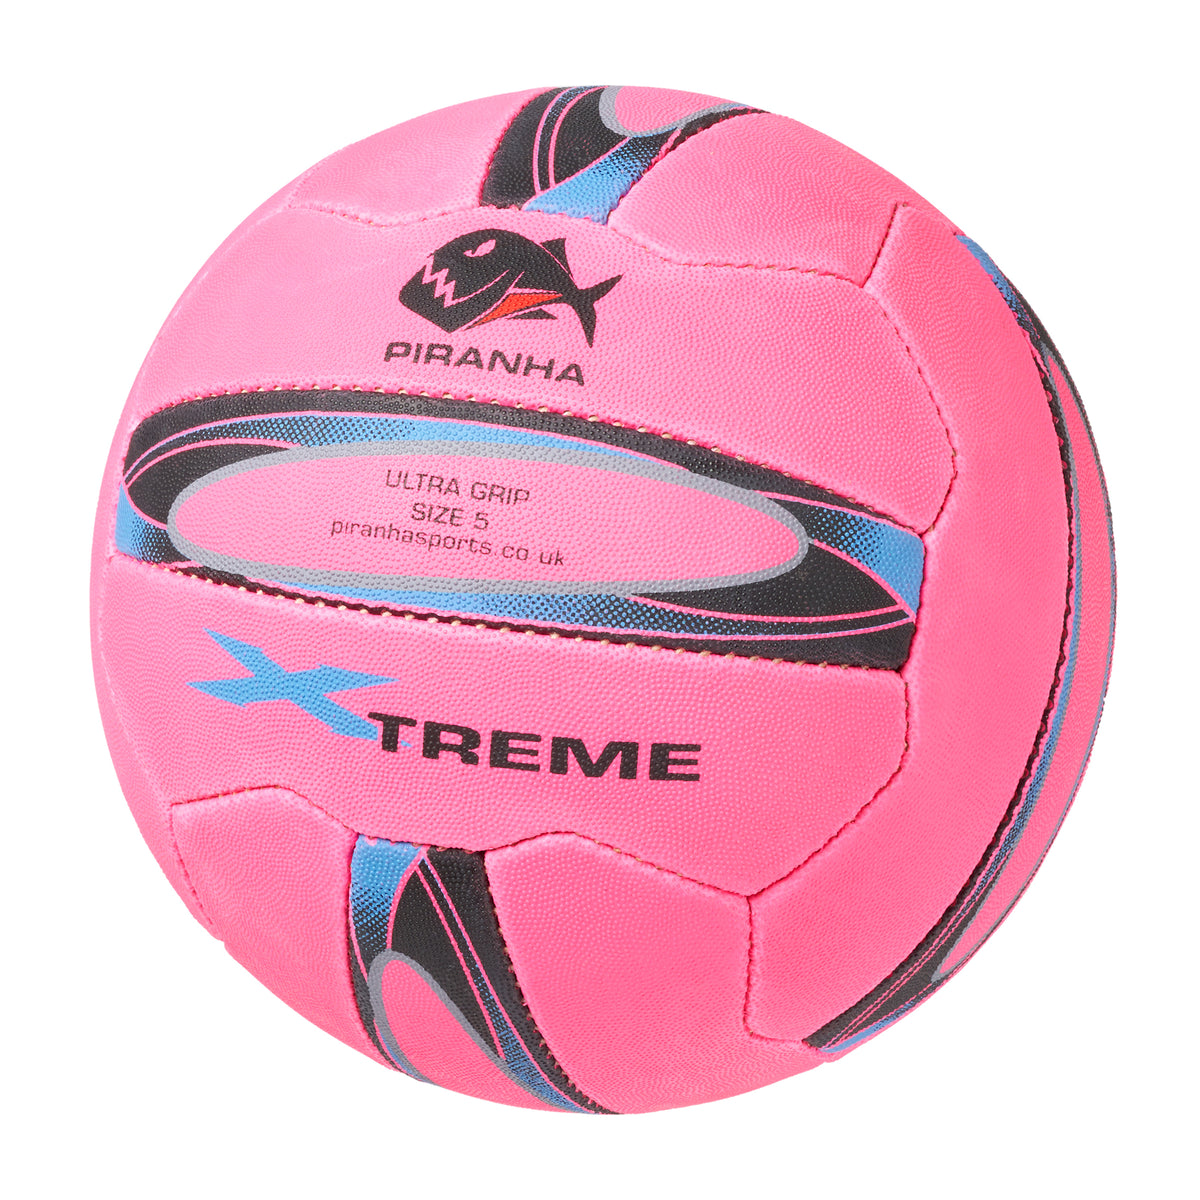 Piranha Xtreme Netball: Pink